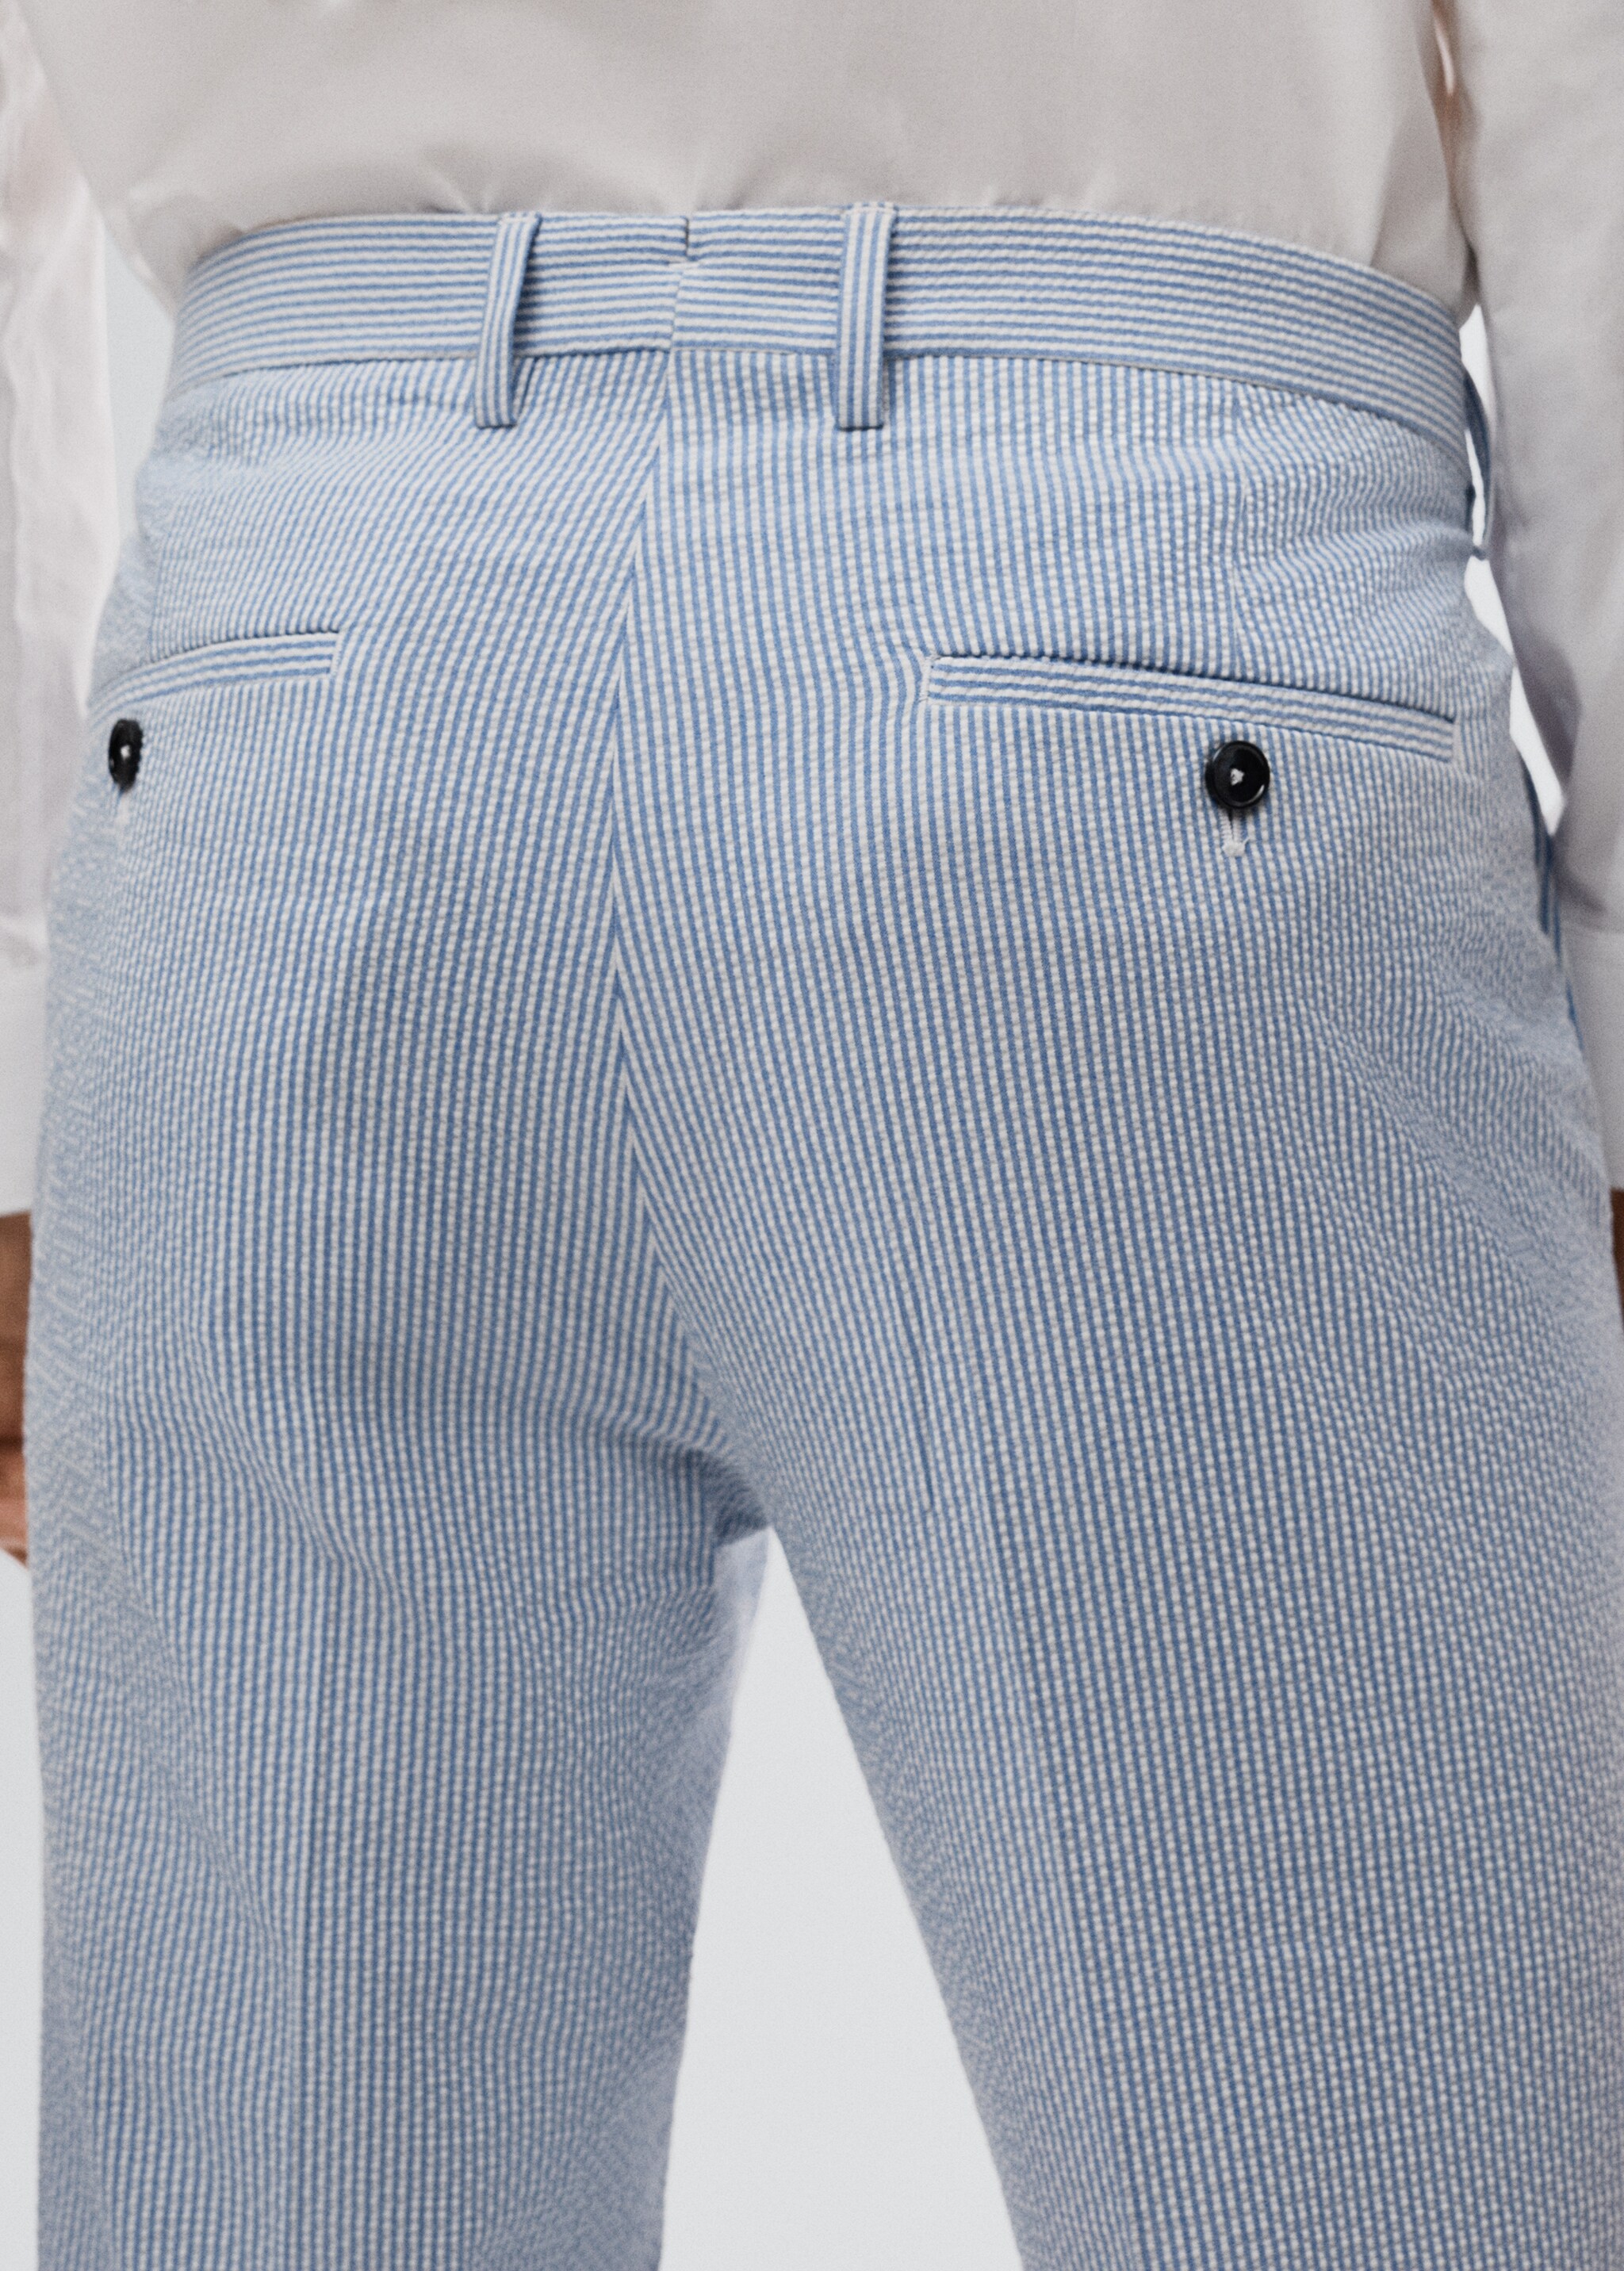 Pantalons vestir súper slim fit - Detall de l'article 3